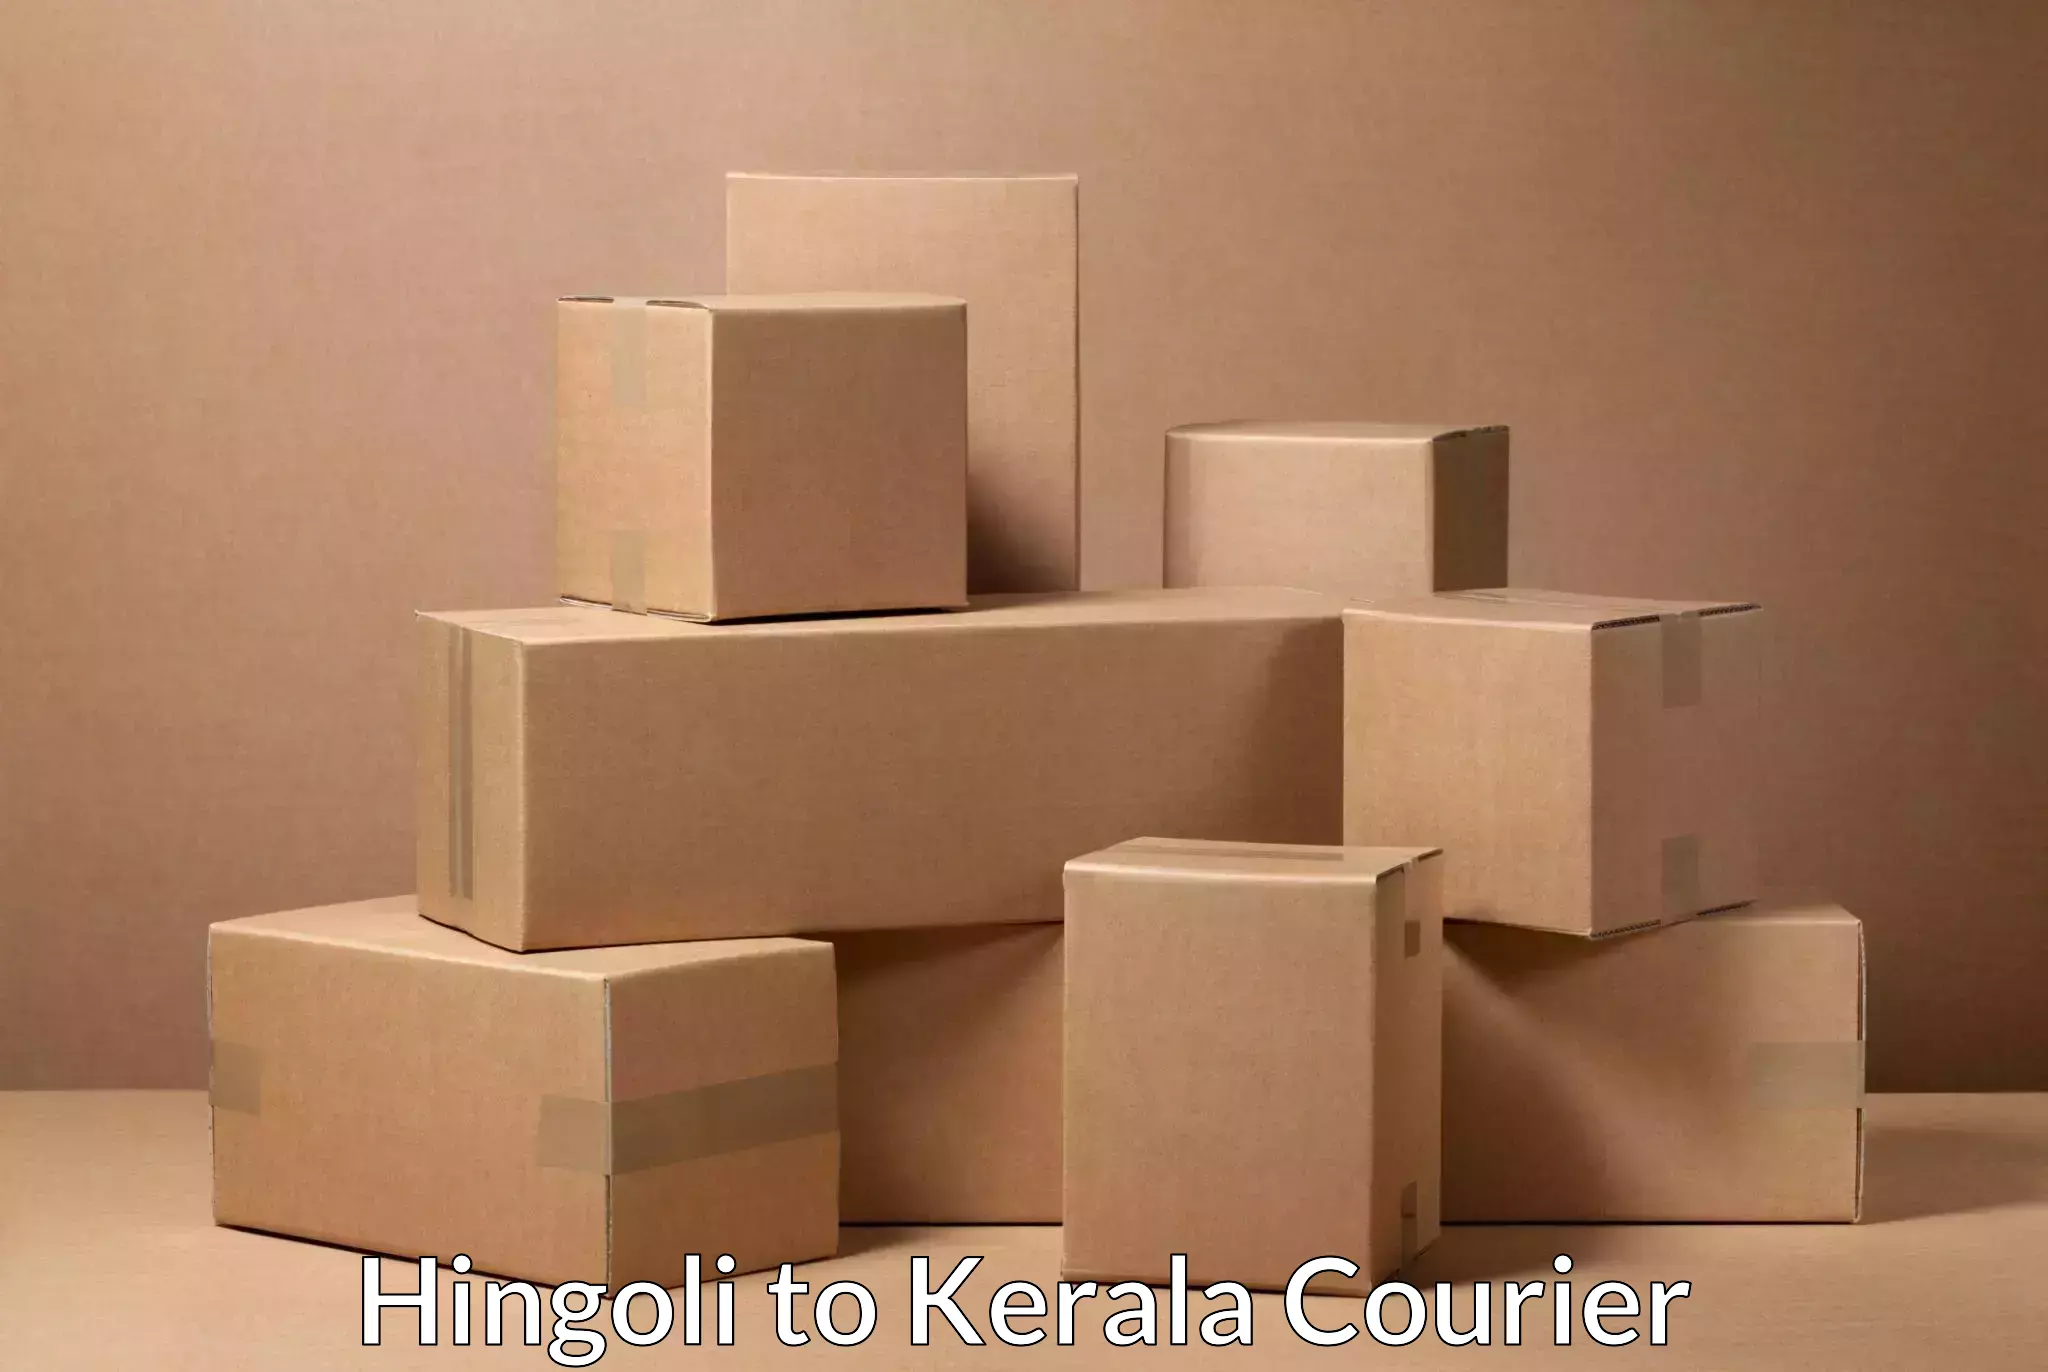 High-capacity parcel service Hingoli to Kerala